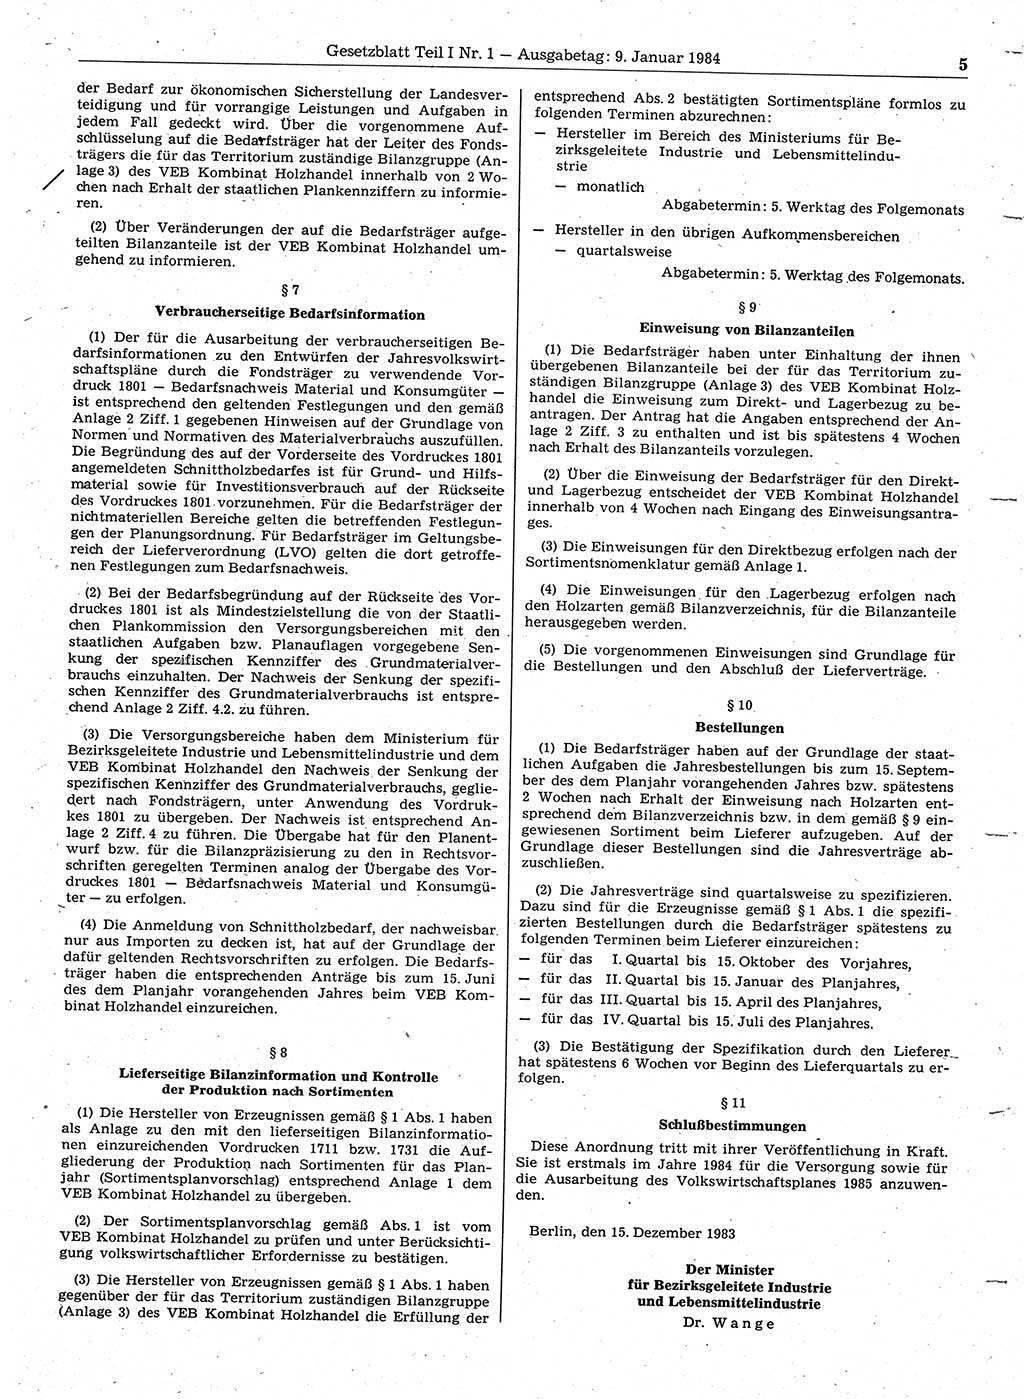 Gesetzblatt (GBl.) der Deutschen Demokratischen Republik (DDR) Teil Ⅰ 1984, Seite 5 (GBl. DDR Ⅰ 1984, S. 5)